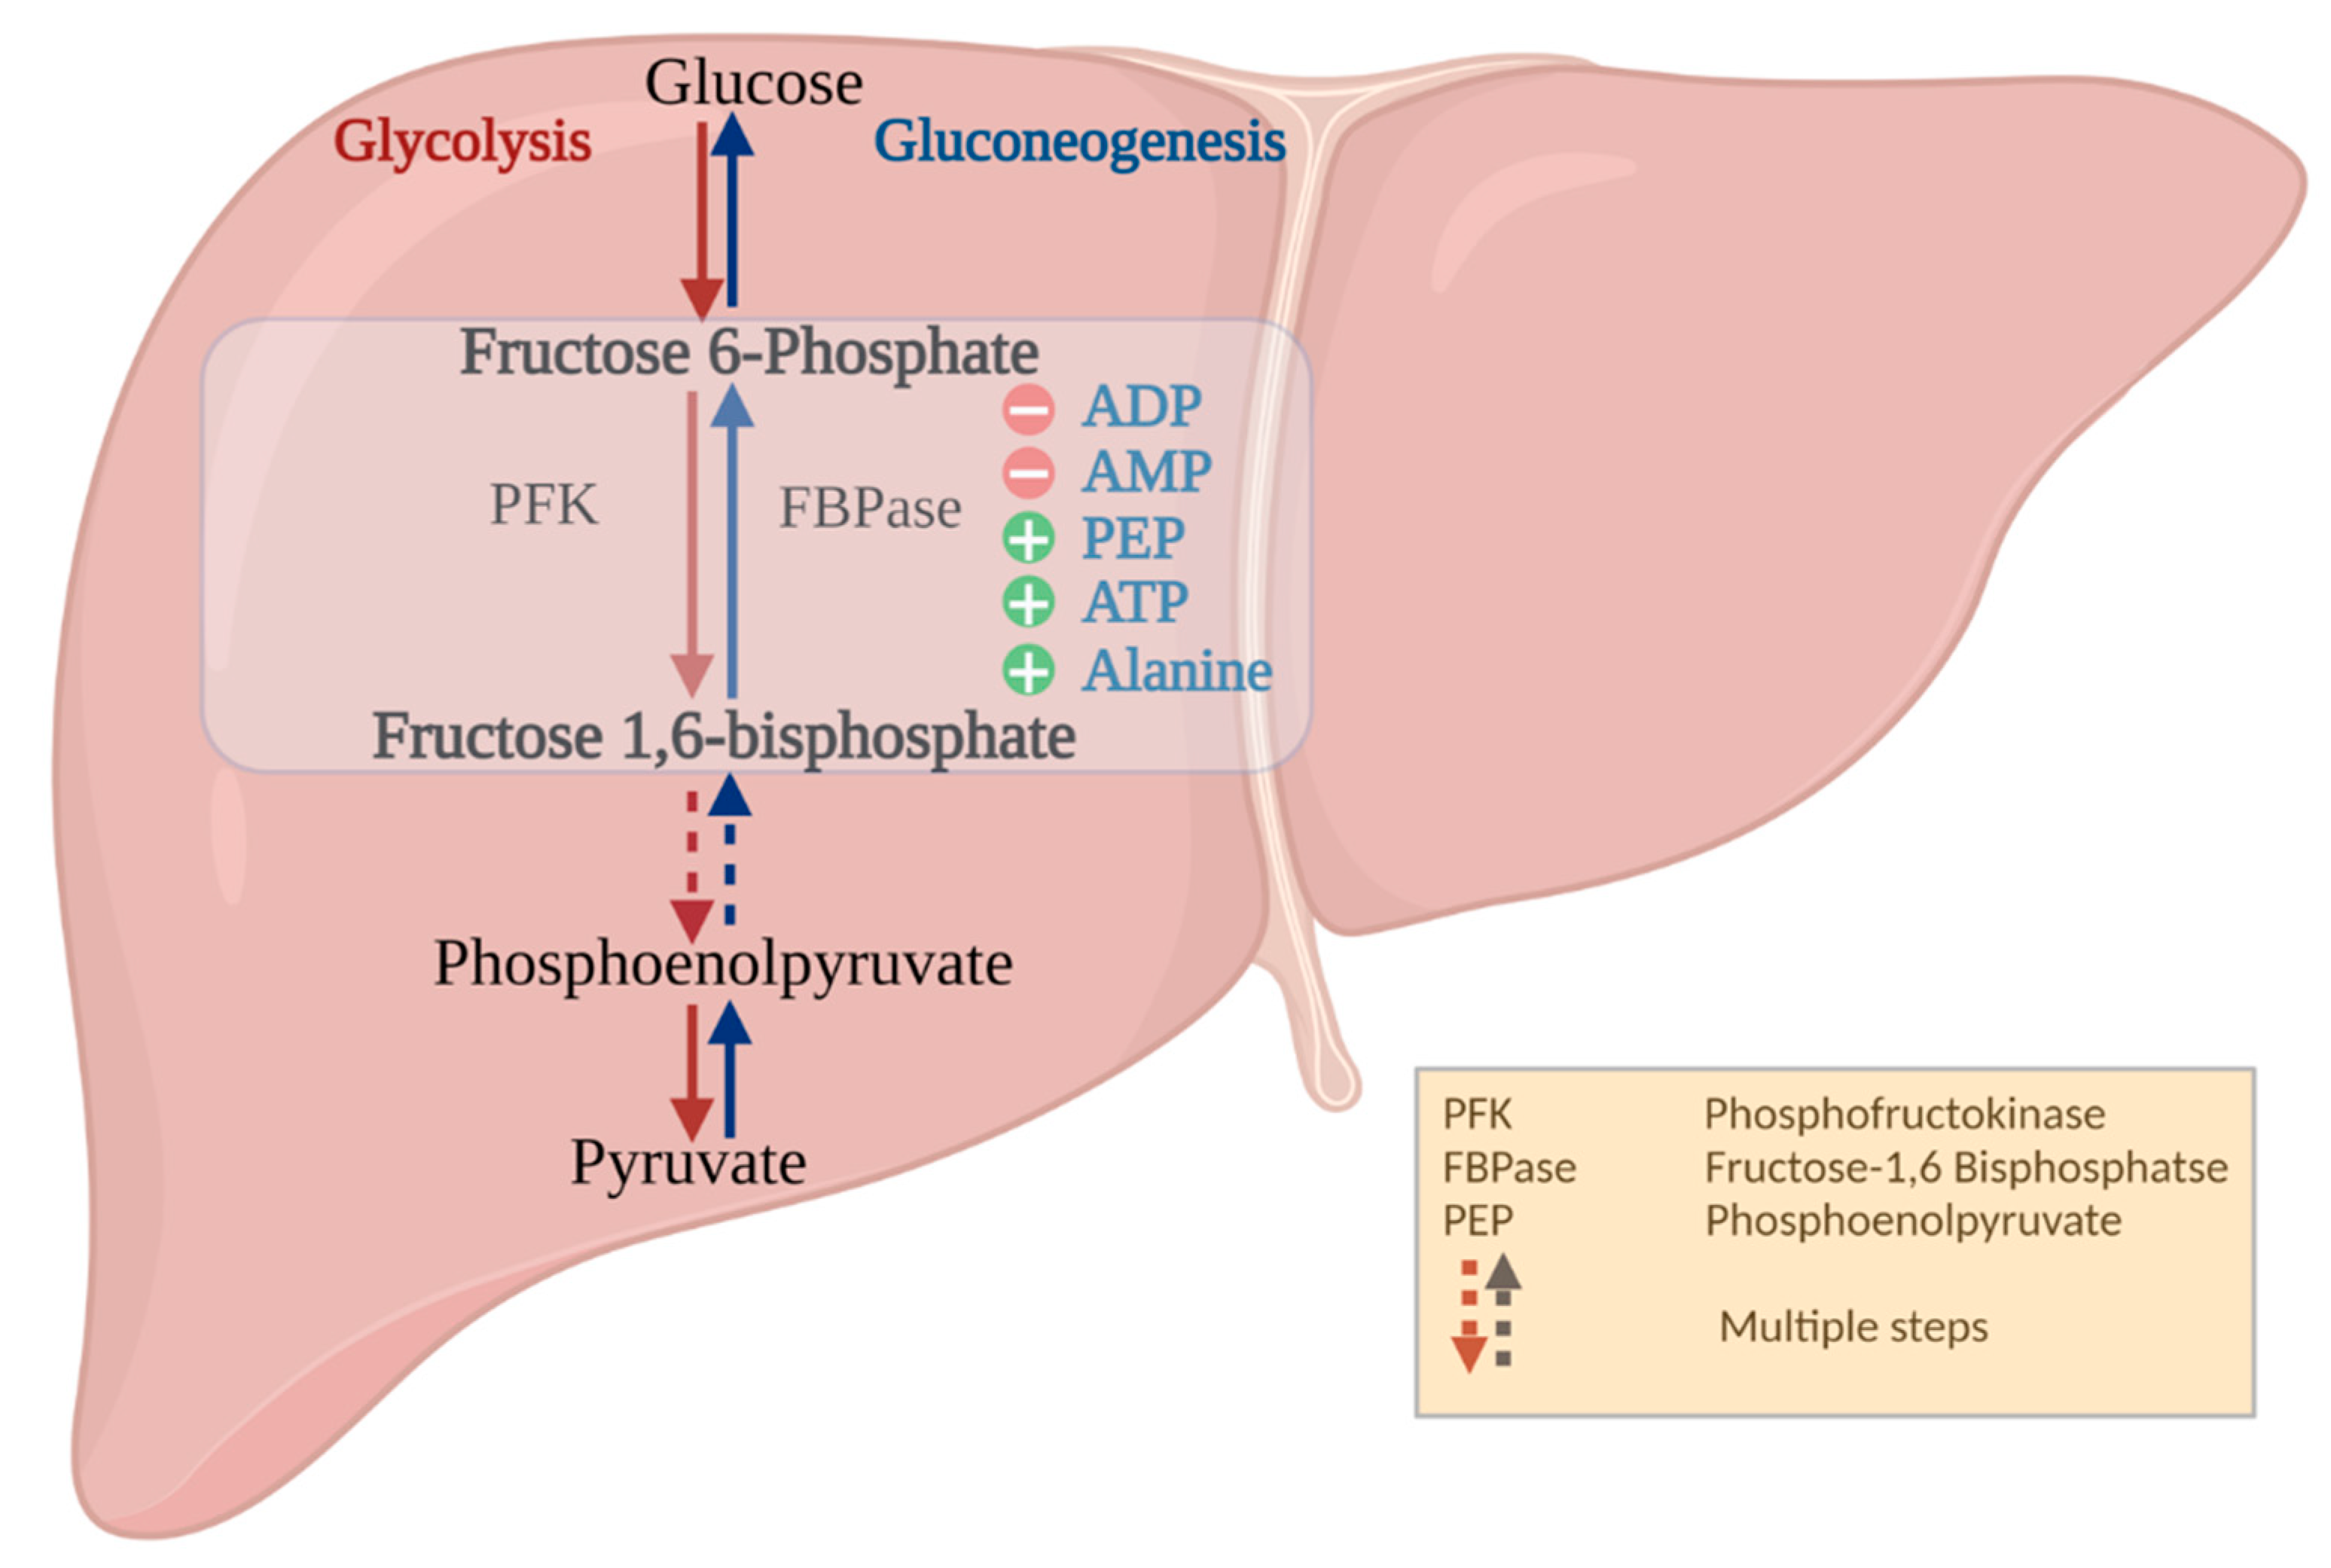 glucose 6 phosphate to fructose 6 phosphate mechanism